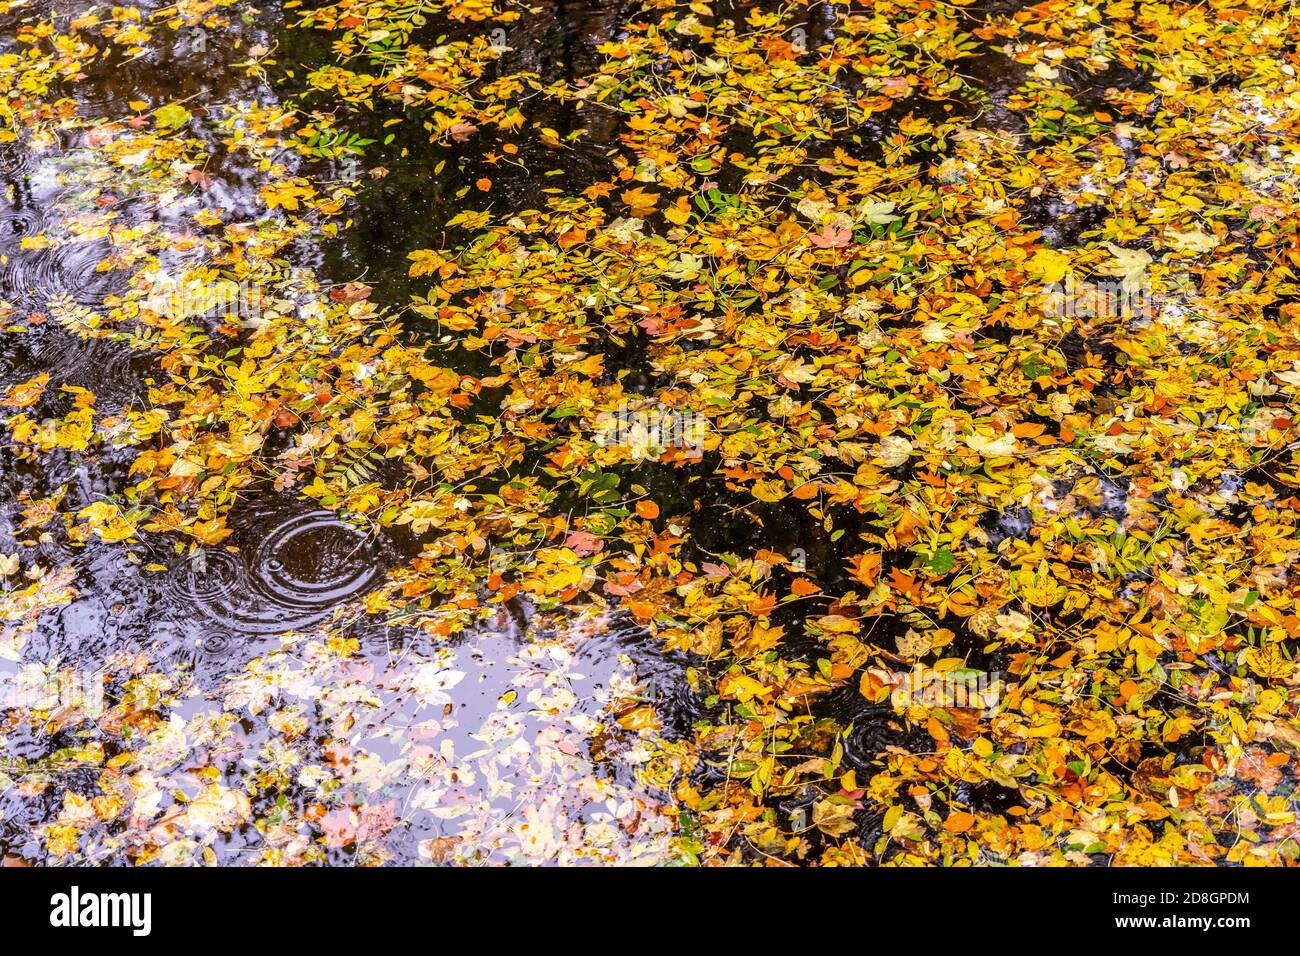 Bunter Blätter, Laub, im Herbst, schwimmen auf der Oberfläche eines Teichs, Regenwetter, Tropfen treffen auf die Wasserfläche, Stock Photo